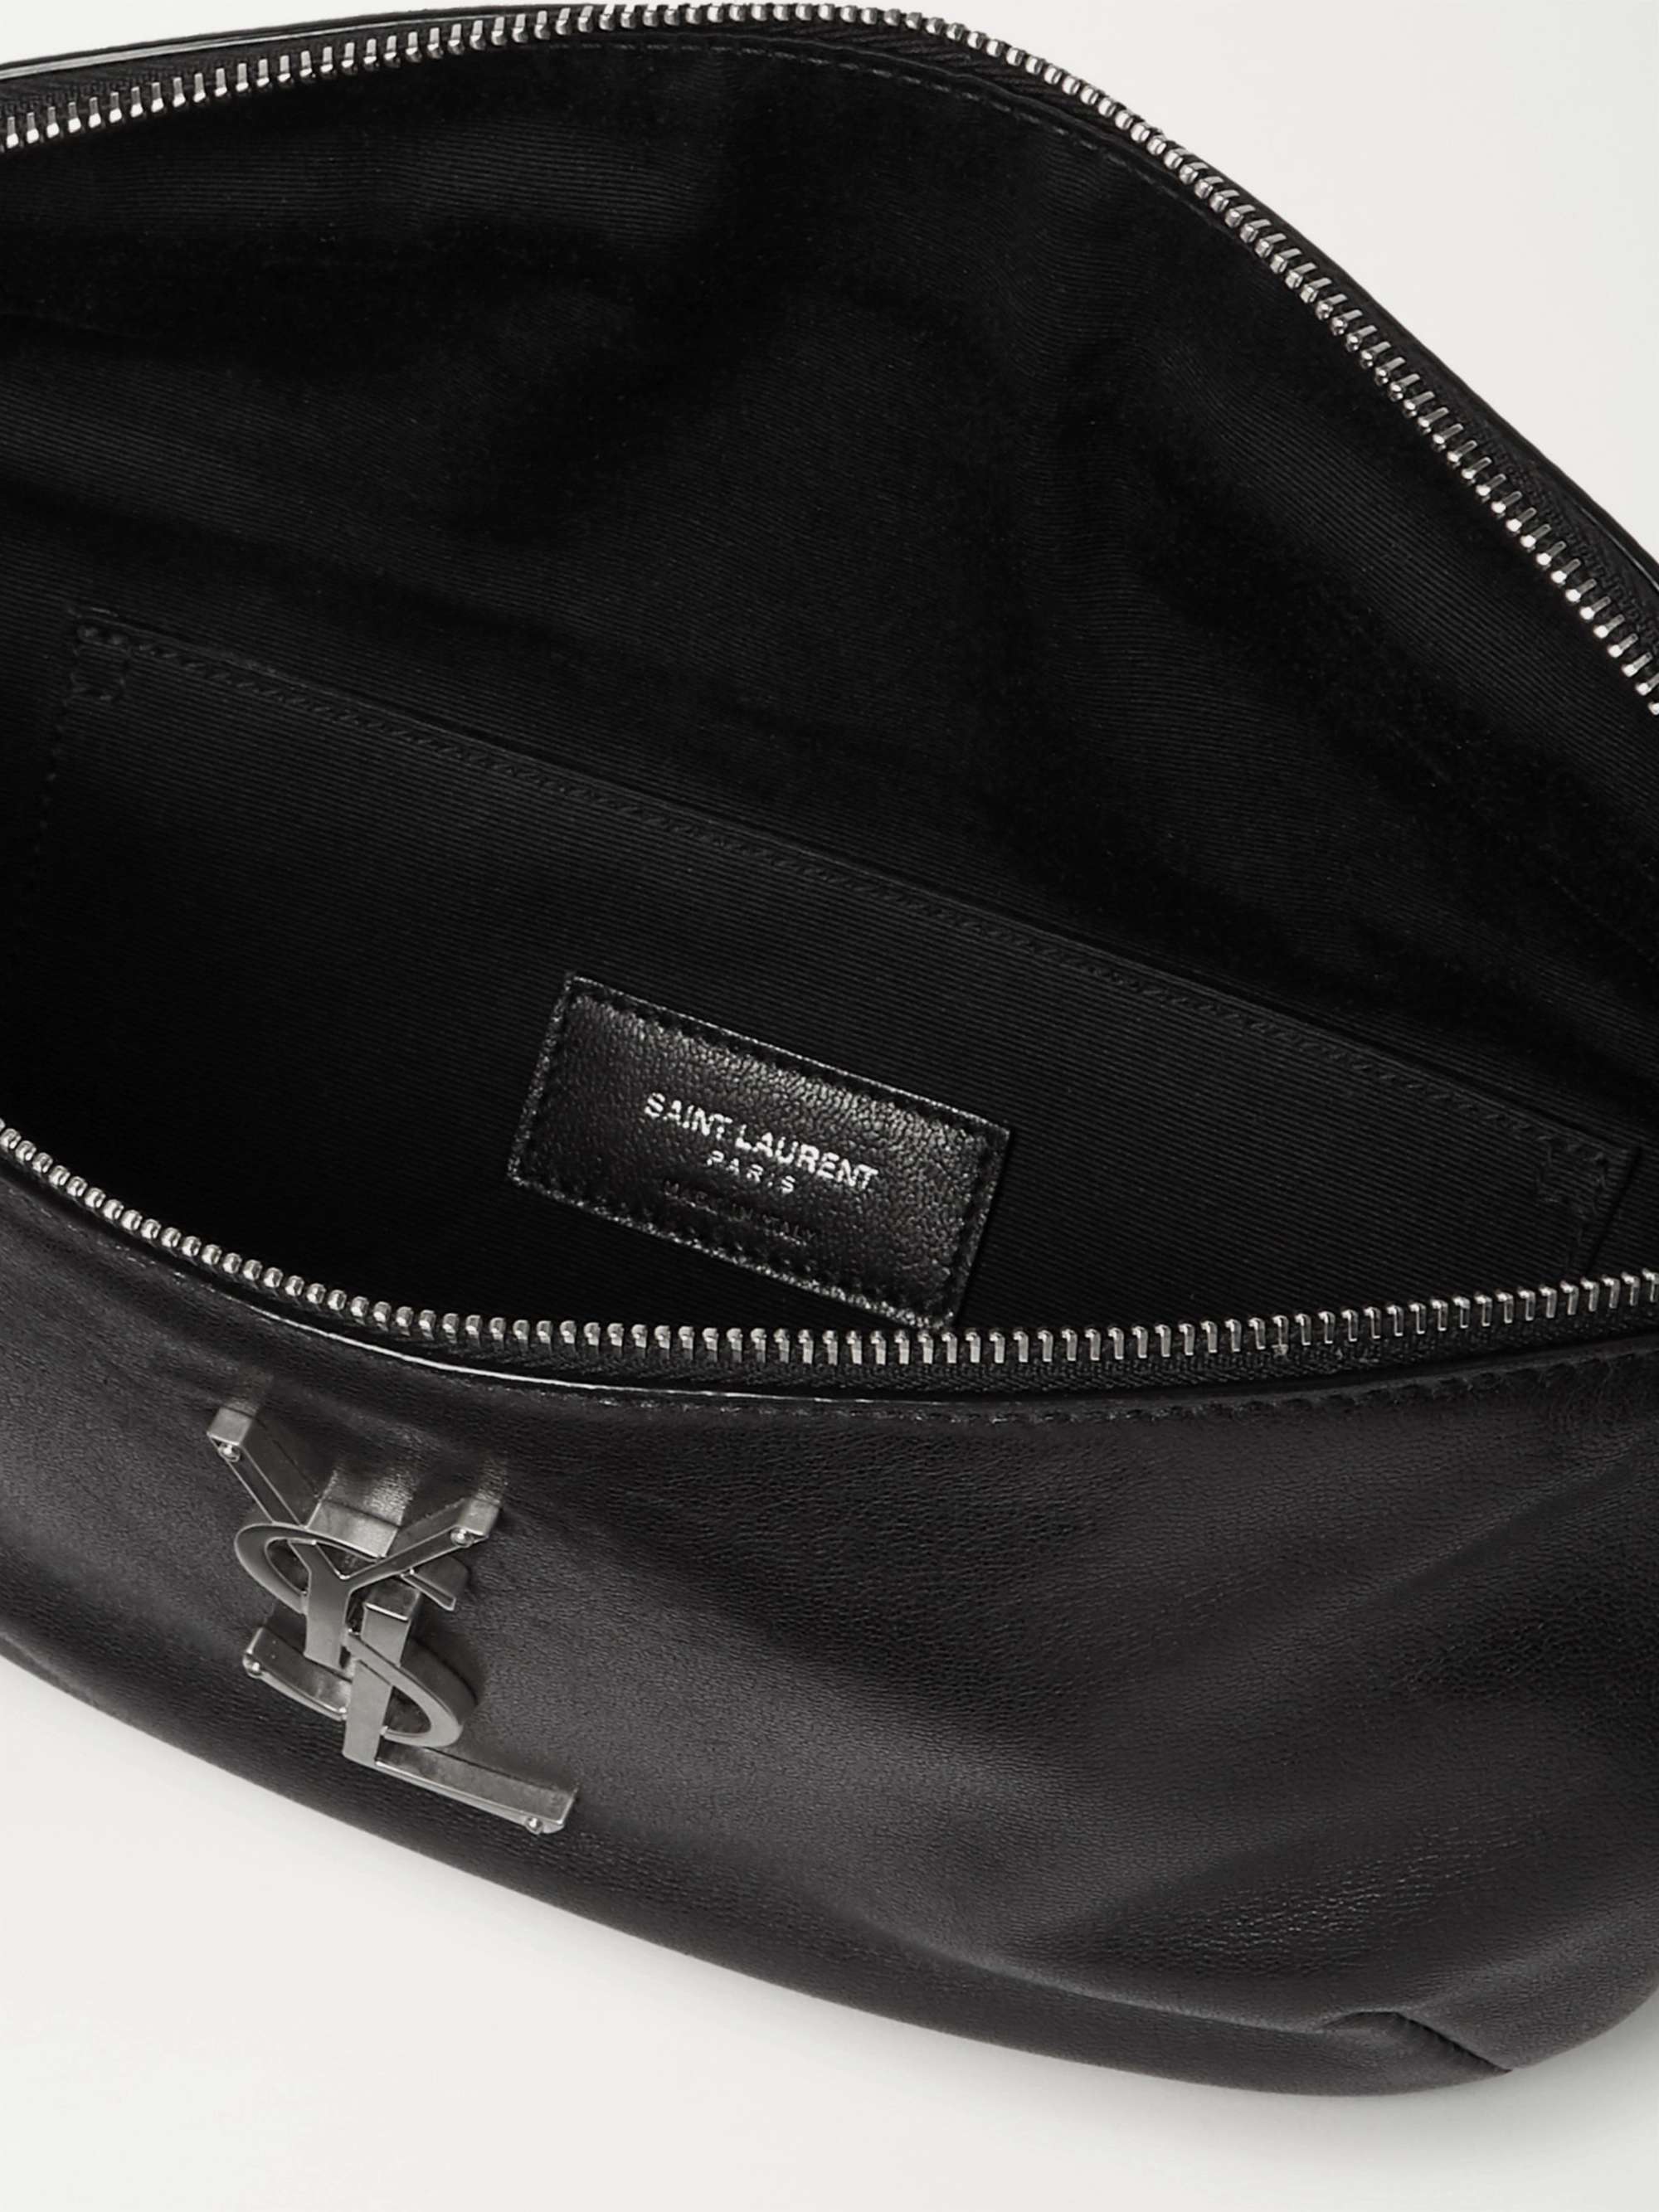 SAINT LAURENT Logo-Appliquéd Leather Belt Bag